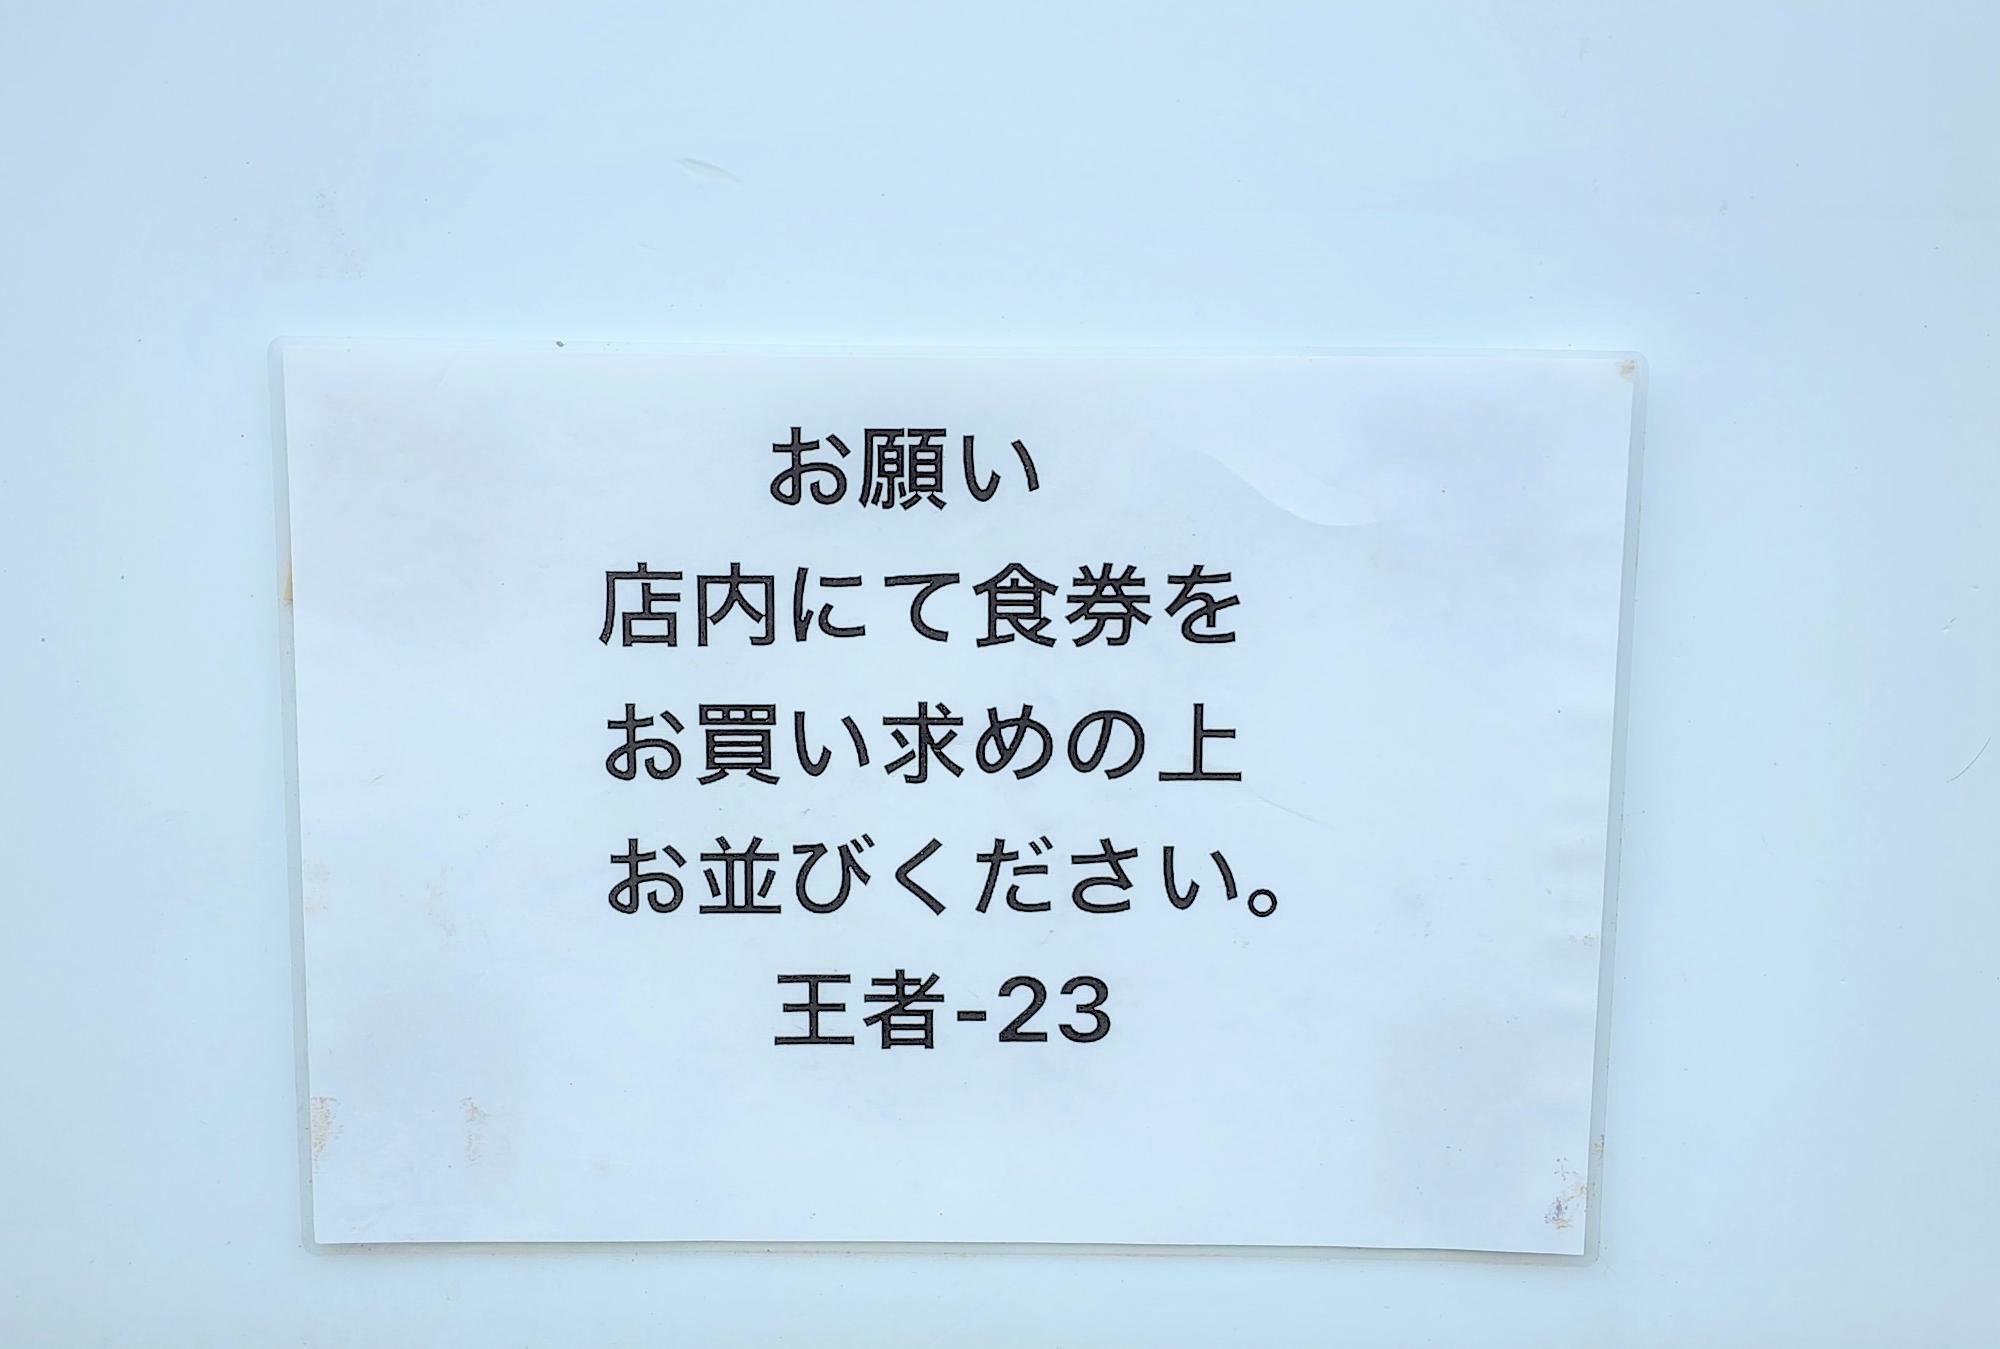 徳島ラーメン「王者-23」の店舗外に掲示してある説明書き。